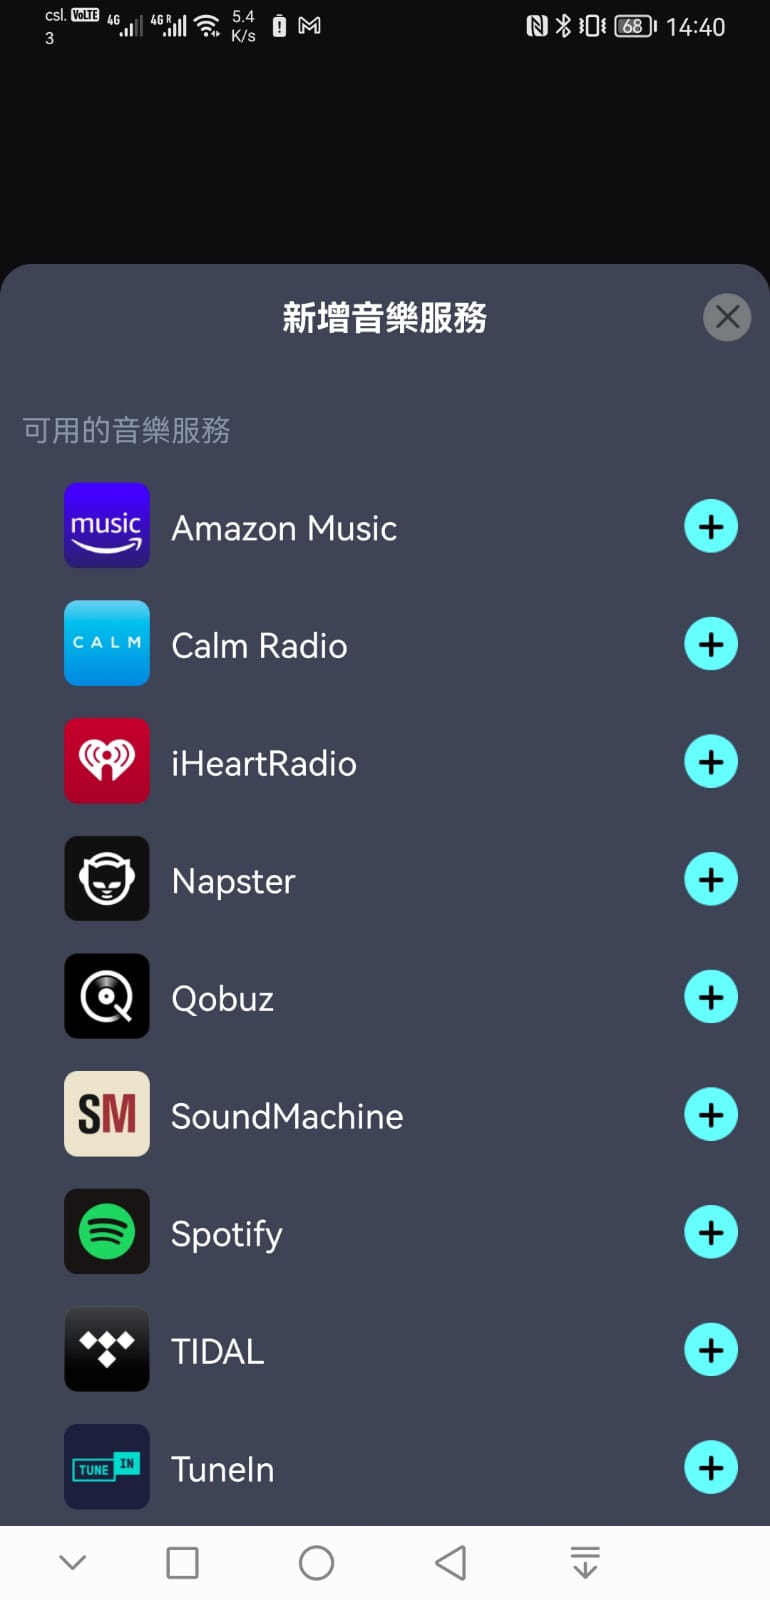 JBL 近年推出的 Soundbar 系列選擇相當豐富，加上音效表現出色，一直好受用家歡迎。而左右兩邊可分體式的設計，讓環繞聲效玩法更加靈活，可以提供更完整的包圍感效果。今次最新推出的高階 Bar 1000 Soundbar 更配搭了 JBL One App，支援自動音效校正，可以因應不同的使用環境和擺位，獲得最佳的 3D 環繞聲效體驗，今次就同大家分享一下校正流程以及各項音效、音樂相關設定。